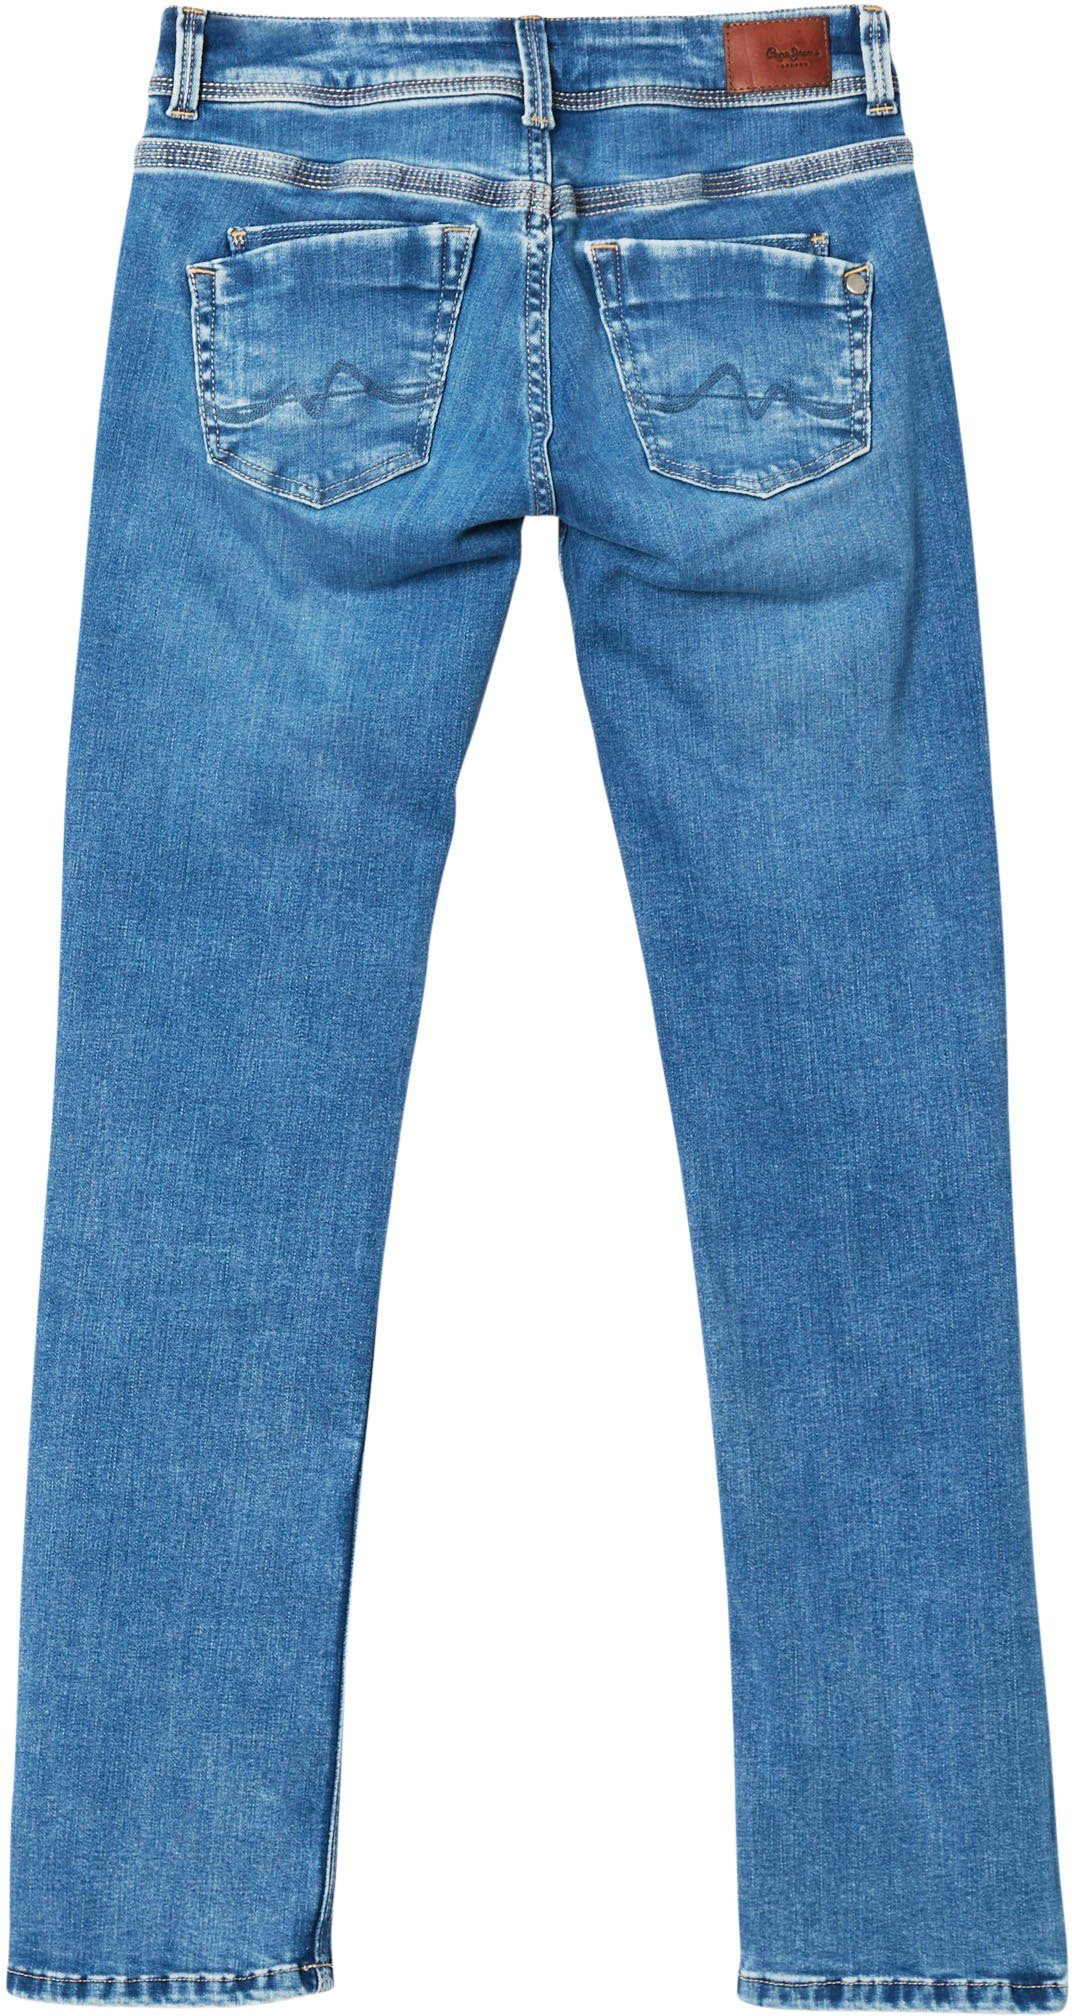 Damen Jeans Pepe Jeans Straight-Jeans SATURN mit geradem Beinverlauf und normaler Leibhöhe